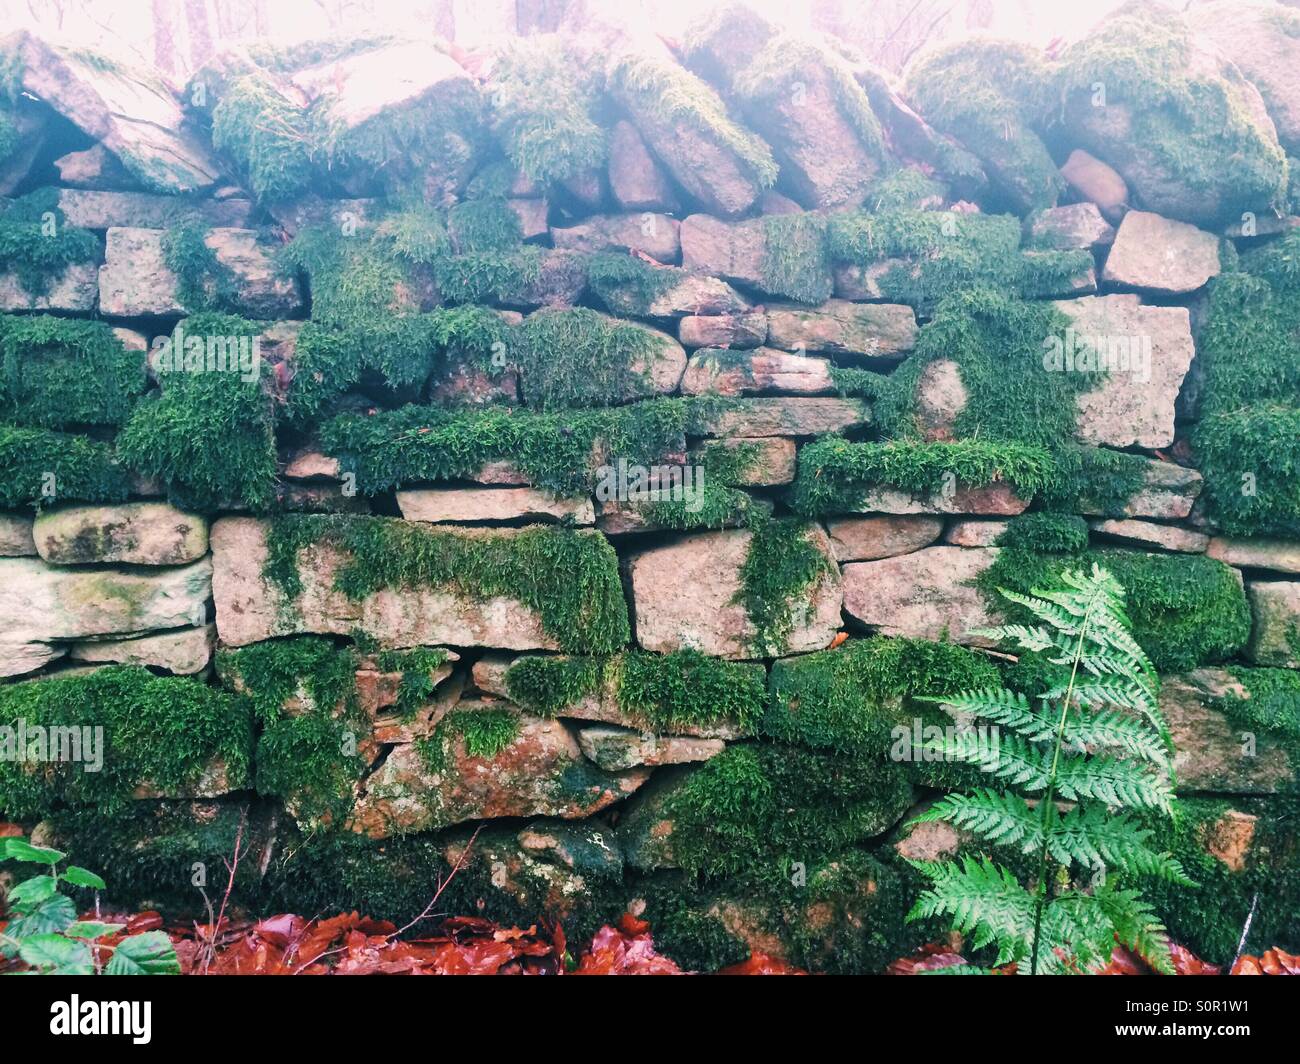 Eine Trockenmauer in Moos bedeckt. Stockfoto